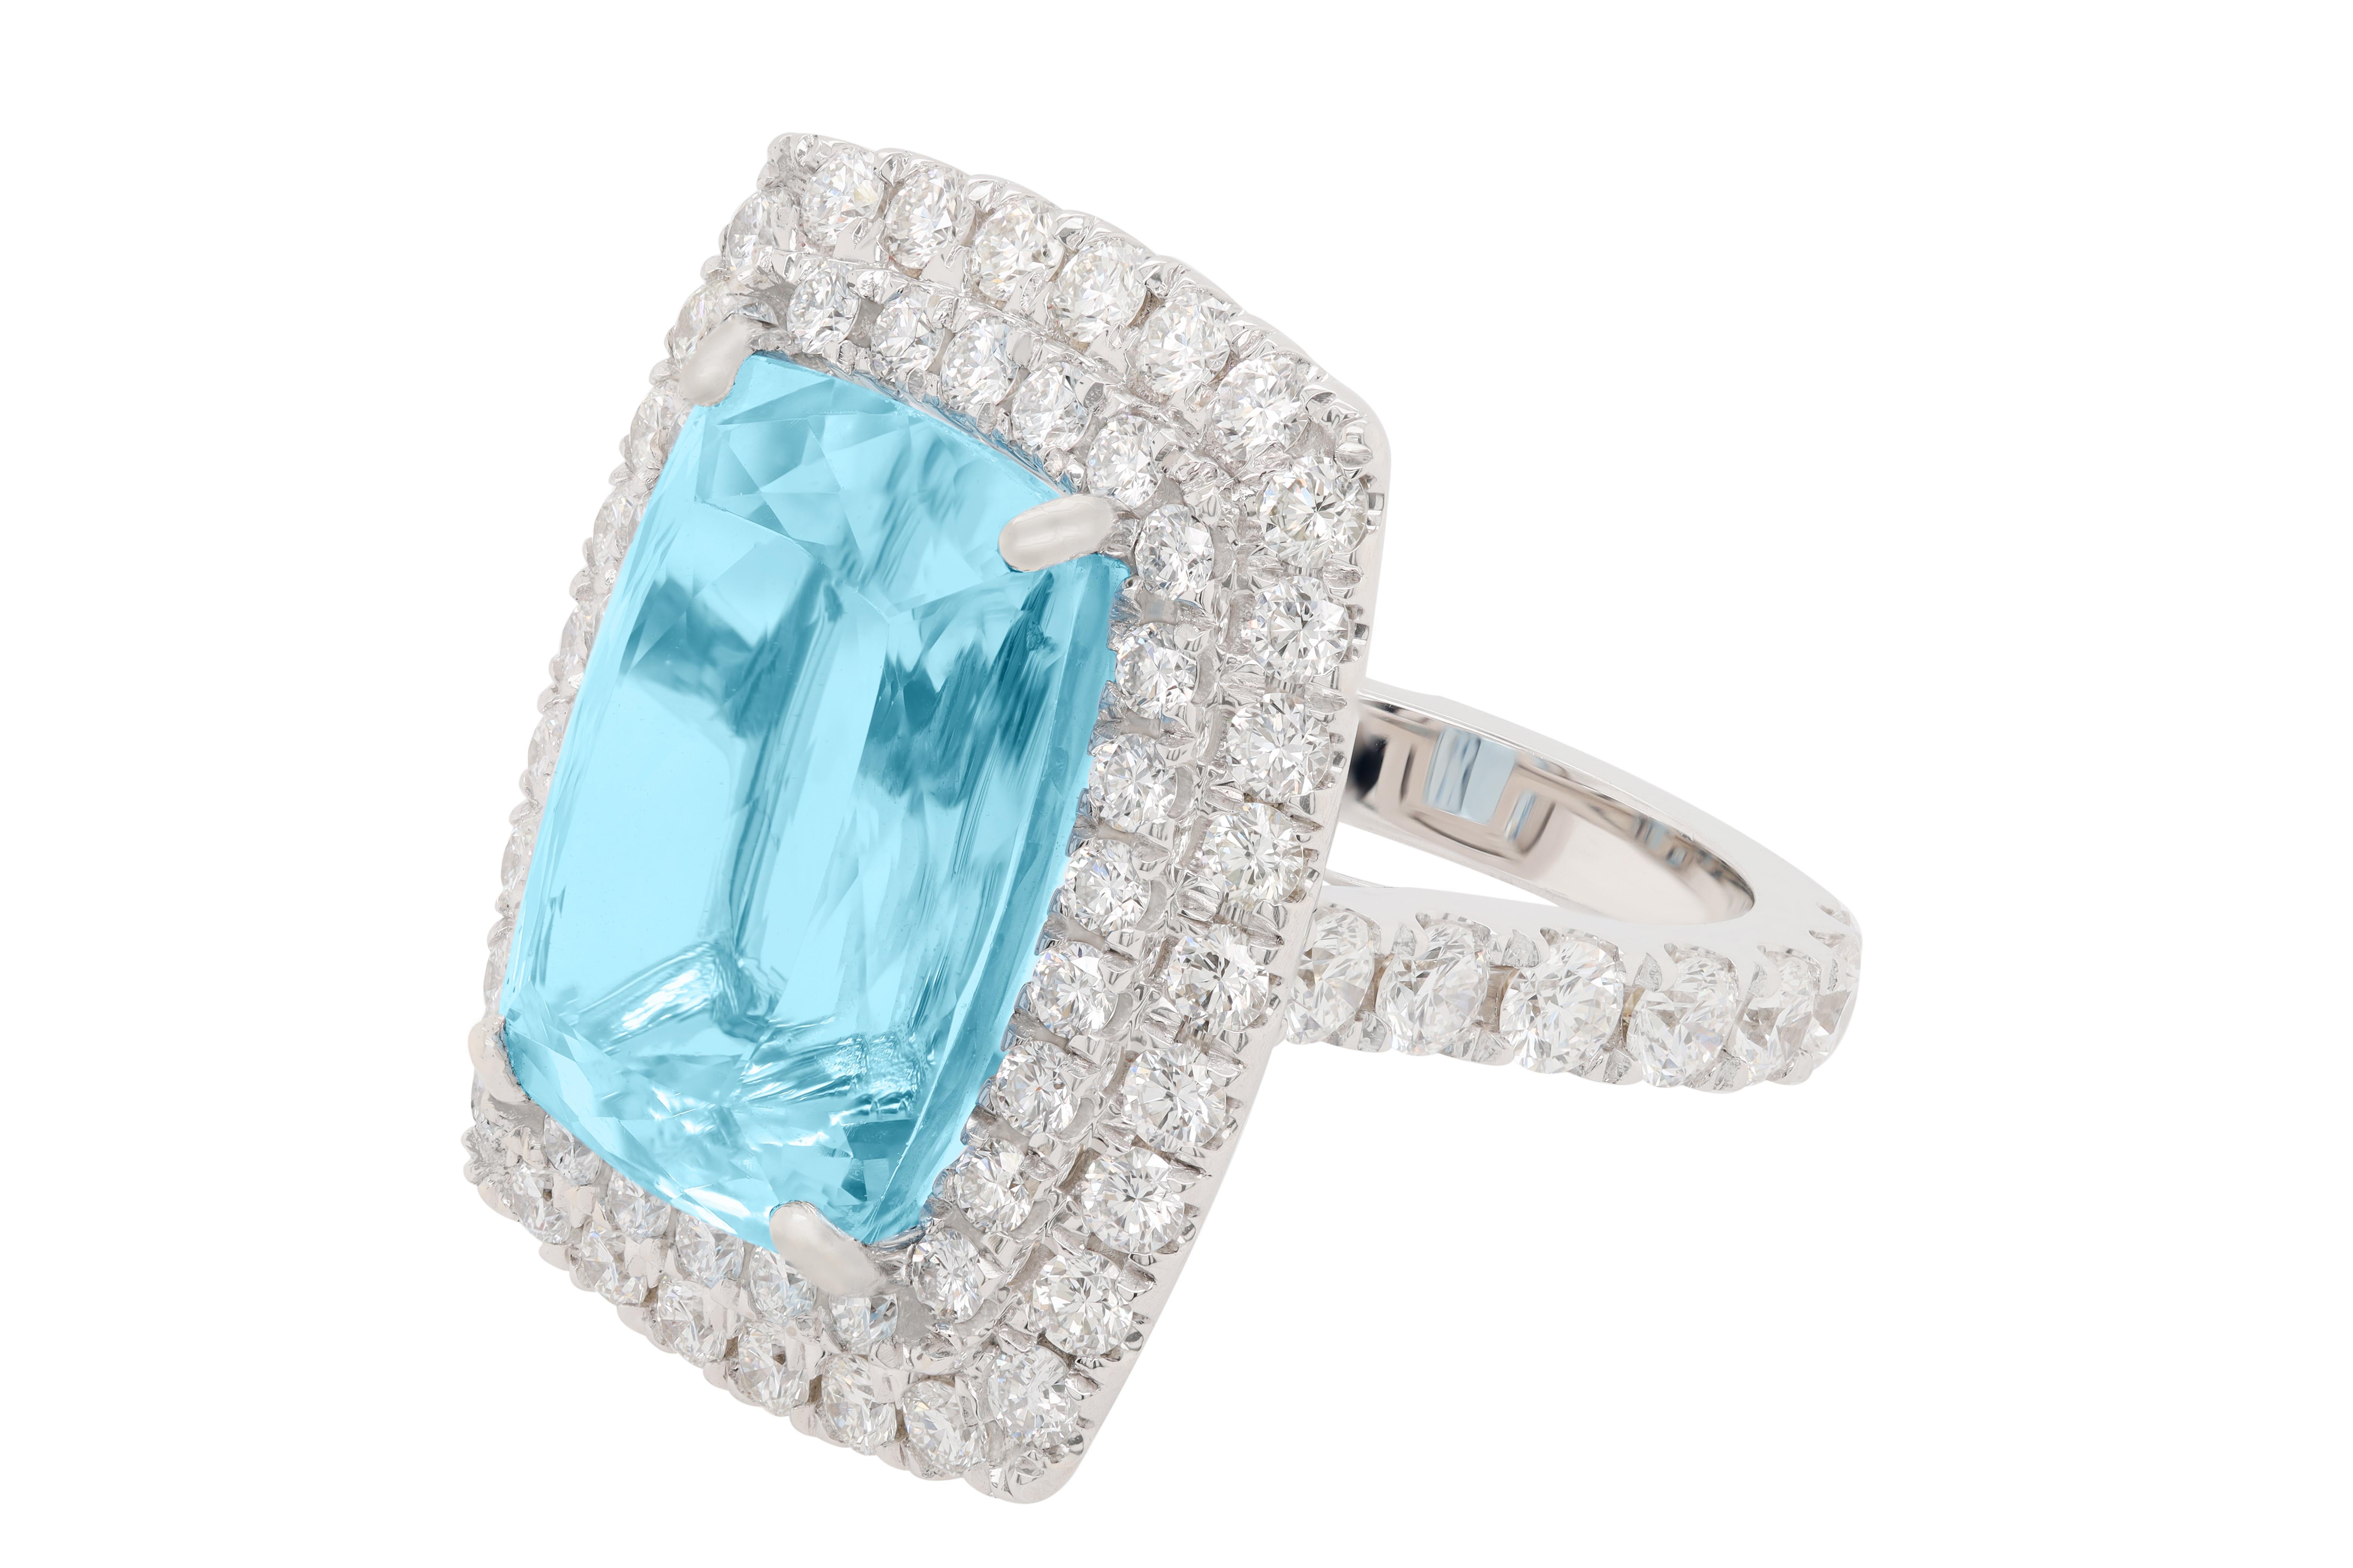 diana's aquamarine ring